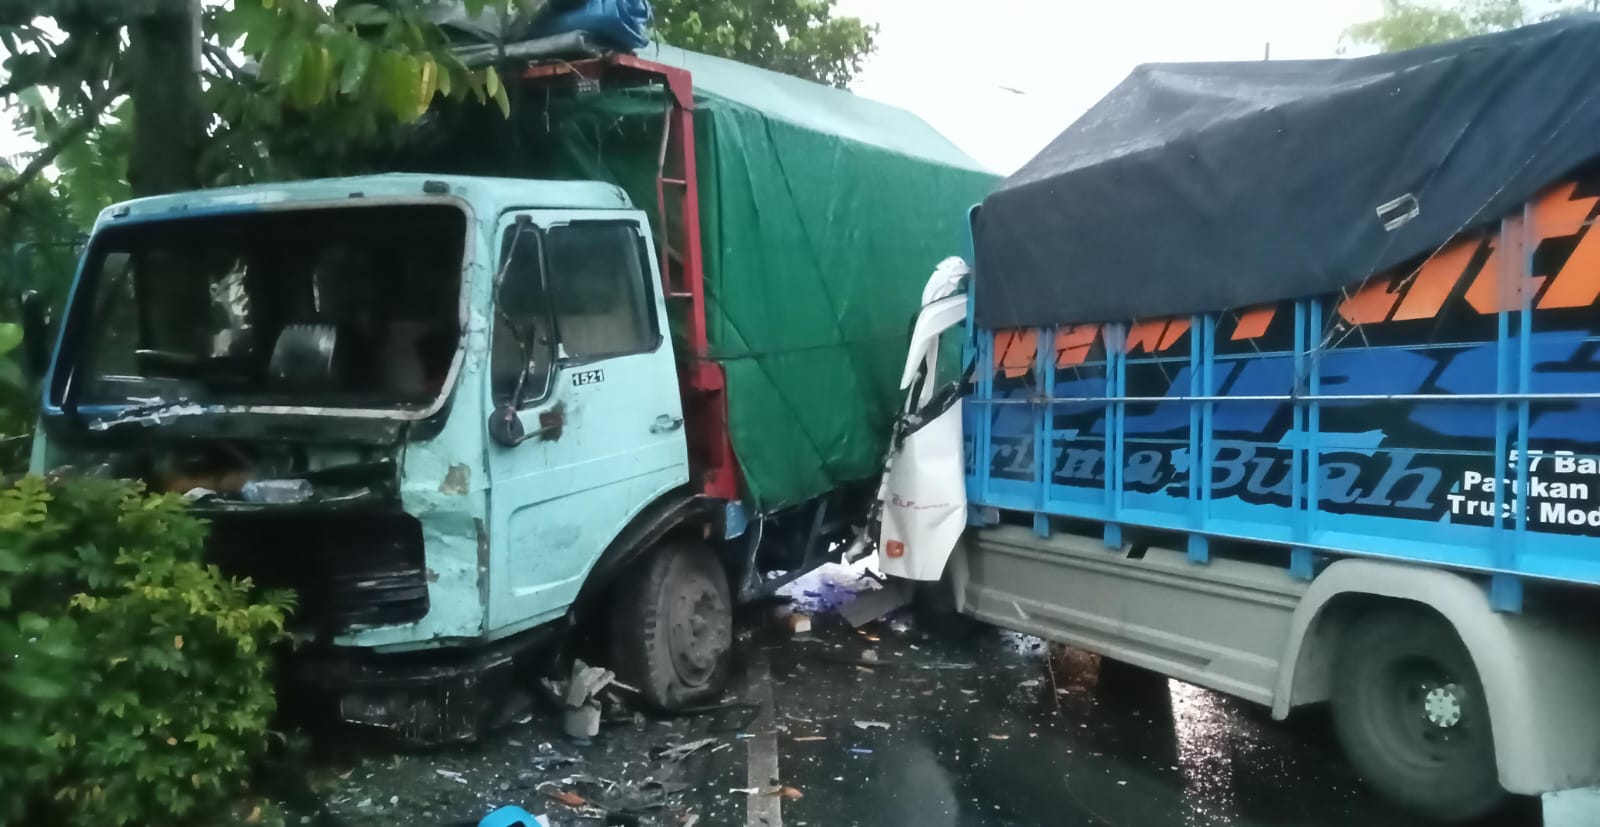 Jalanan Menurun dan Hujan, 3 Truk Terlibat Kecelakaan Beruntun di Ajibarang